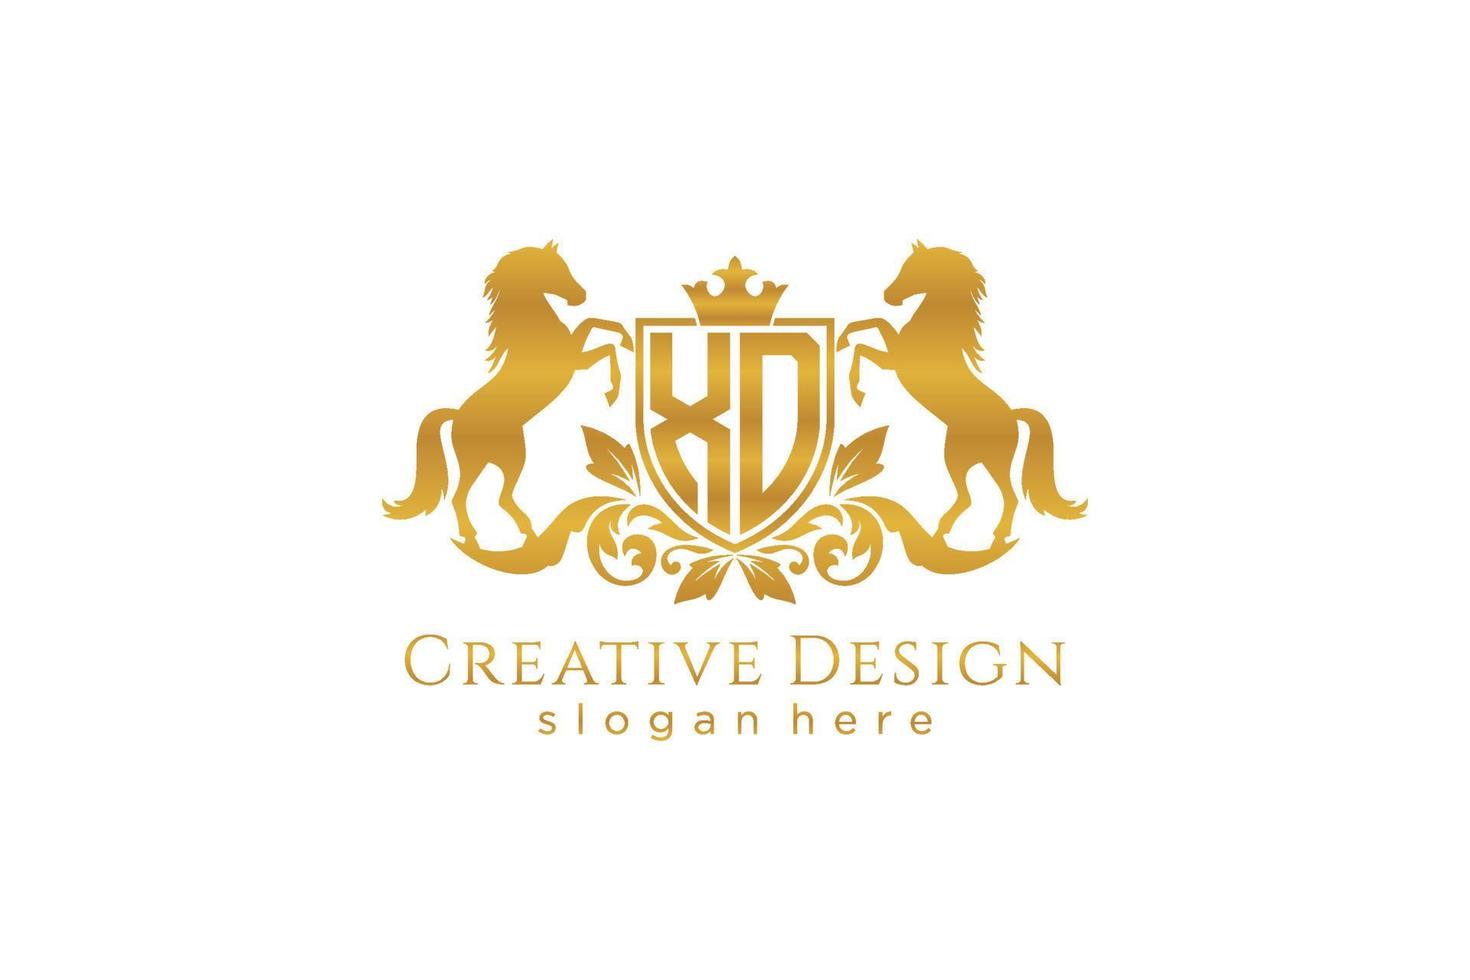 cresta dorada retro inicial xd con escudo y dos caballos, plantilla de insignia con pergaminos y corona real - perfecto para proyectos de marca de lujo vector